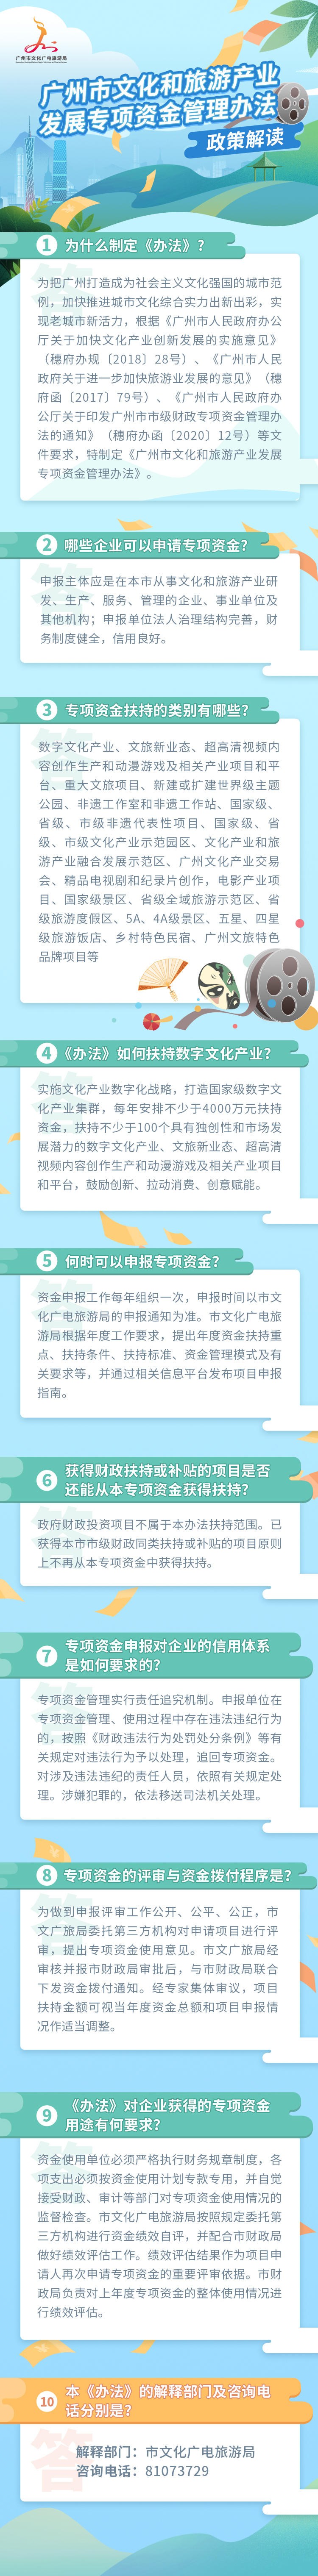 图文解读广州市文化和旅游产业发展专项资金管理办法.jpg